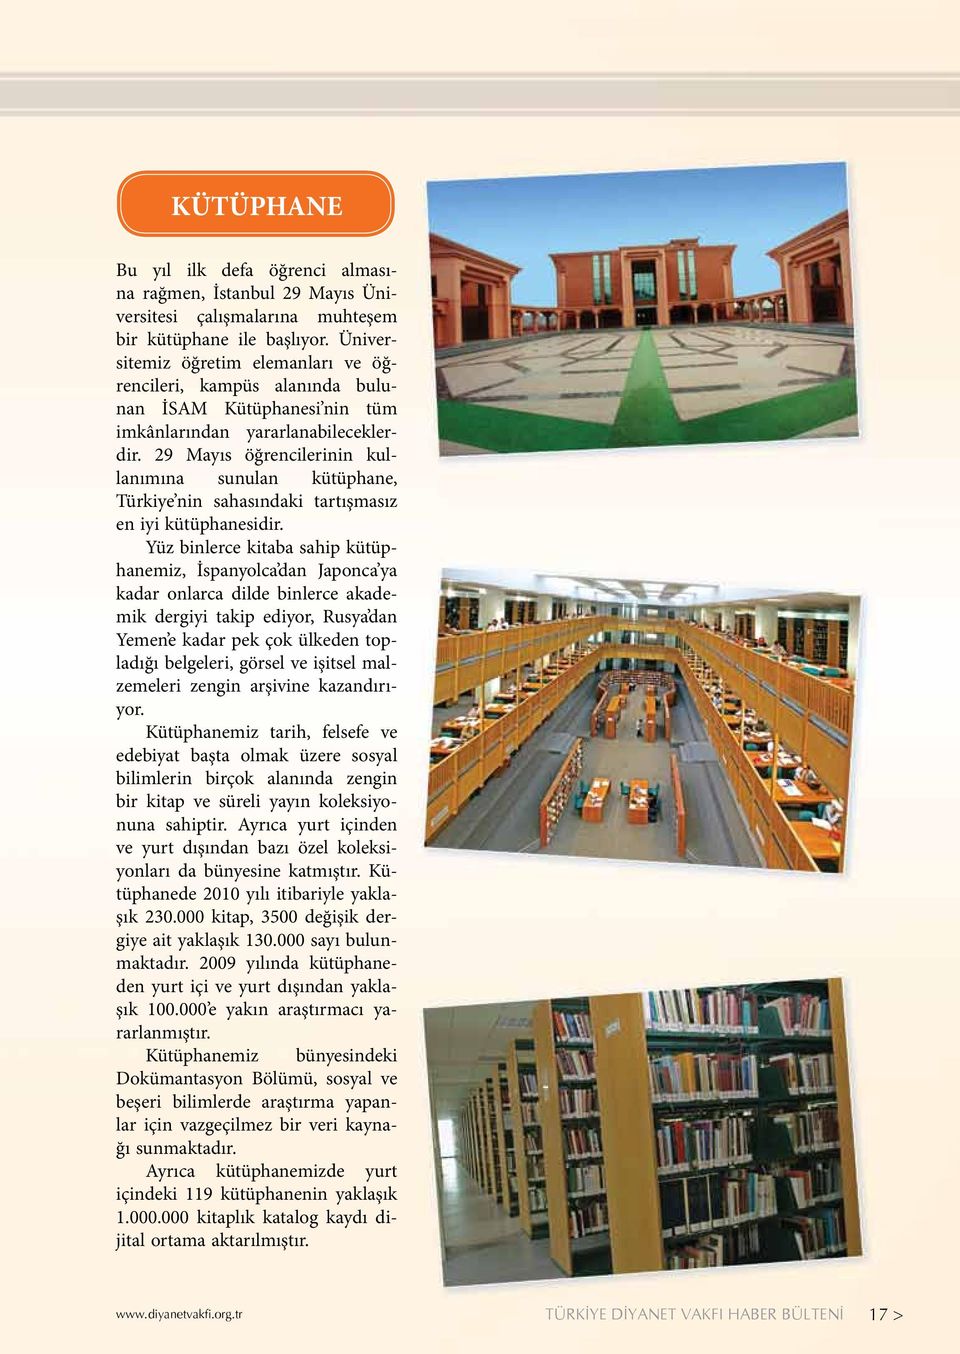 29 Mayıs öğrencilerinin kullanımına sunulan kütüphane, Türkiye nin sahasındaki tartışmasız en iyi kütüphanesidir.